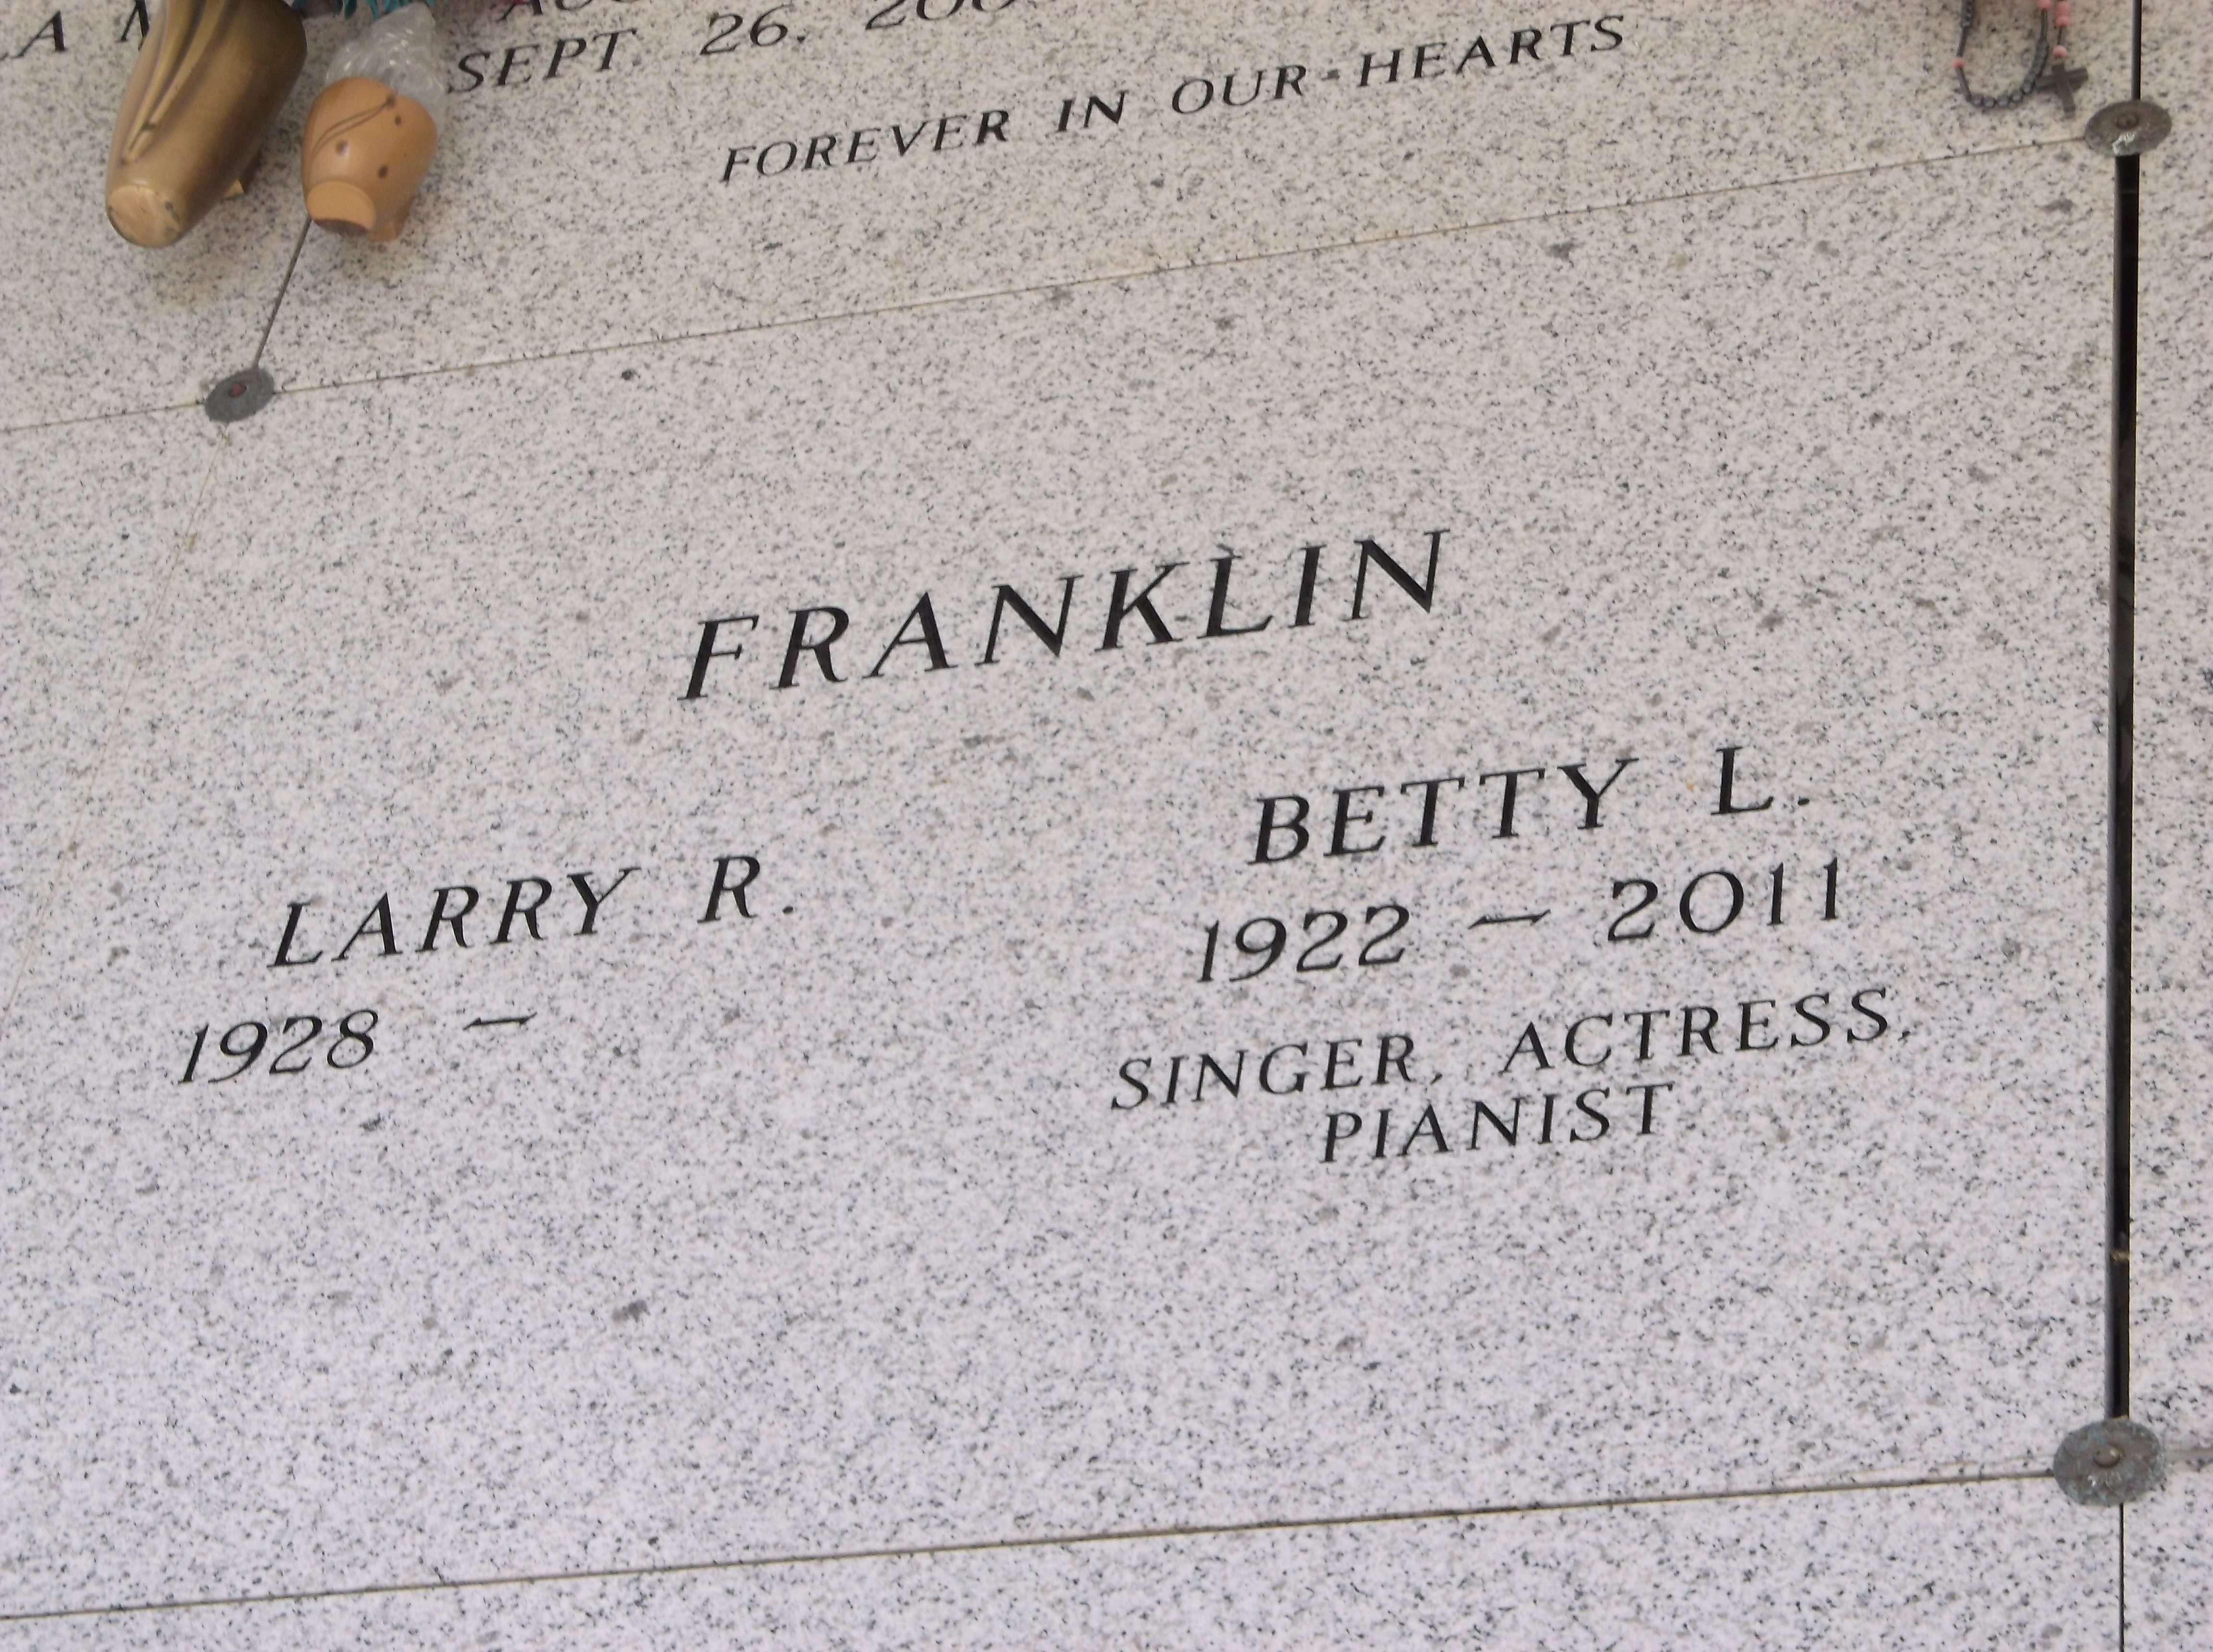 Betty L Franklin